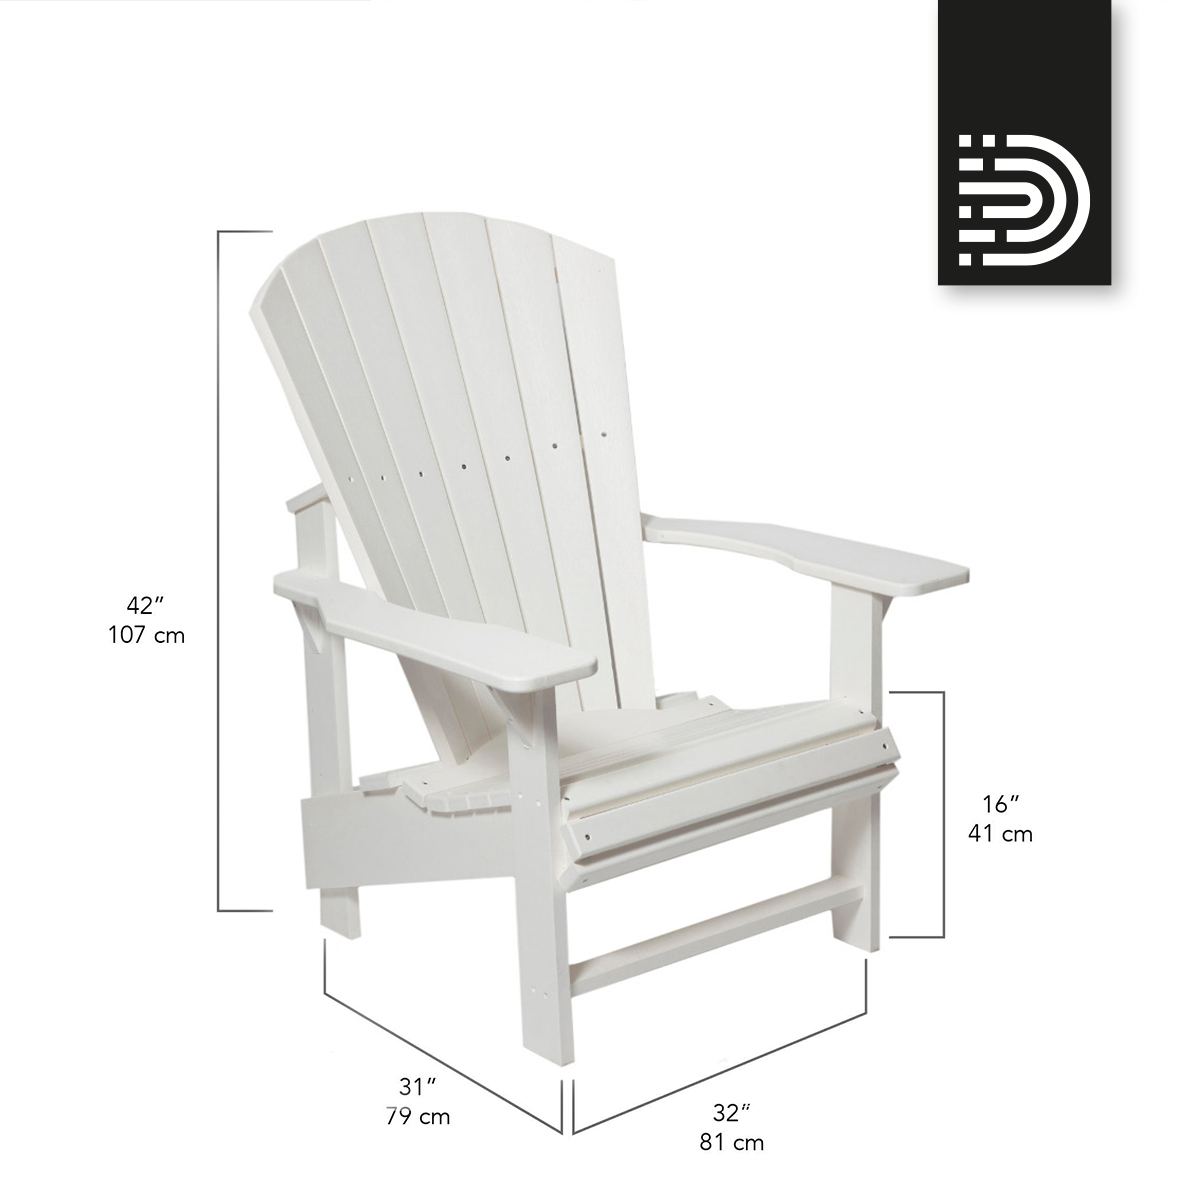 C03 Upright Adirondack Chair - white 02 